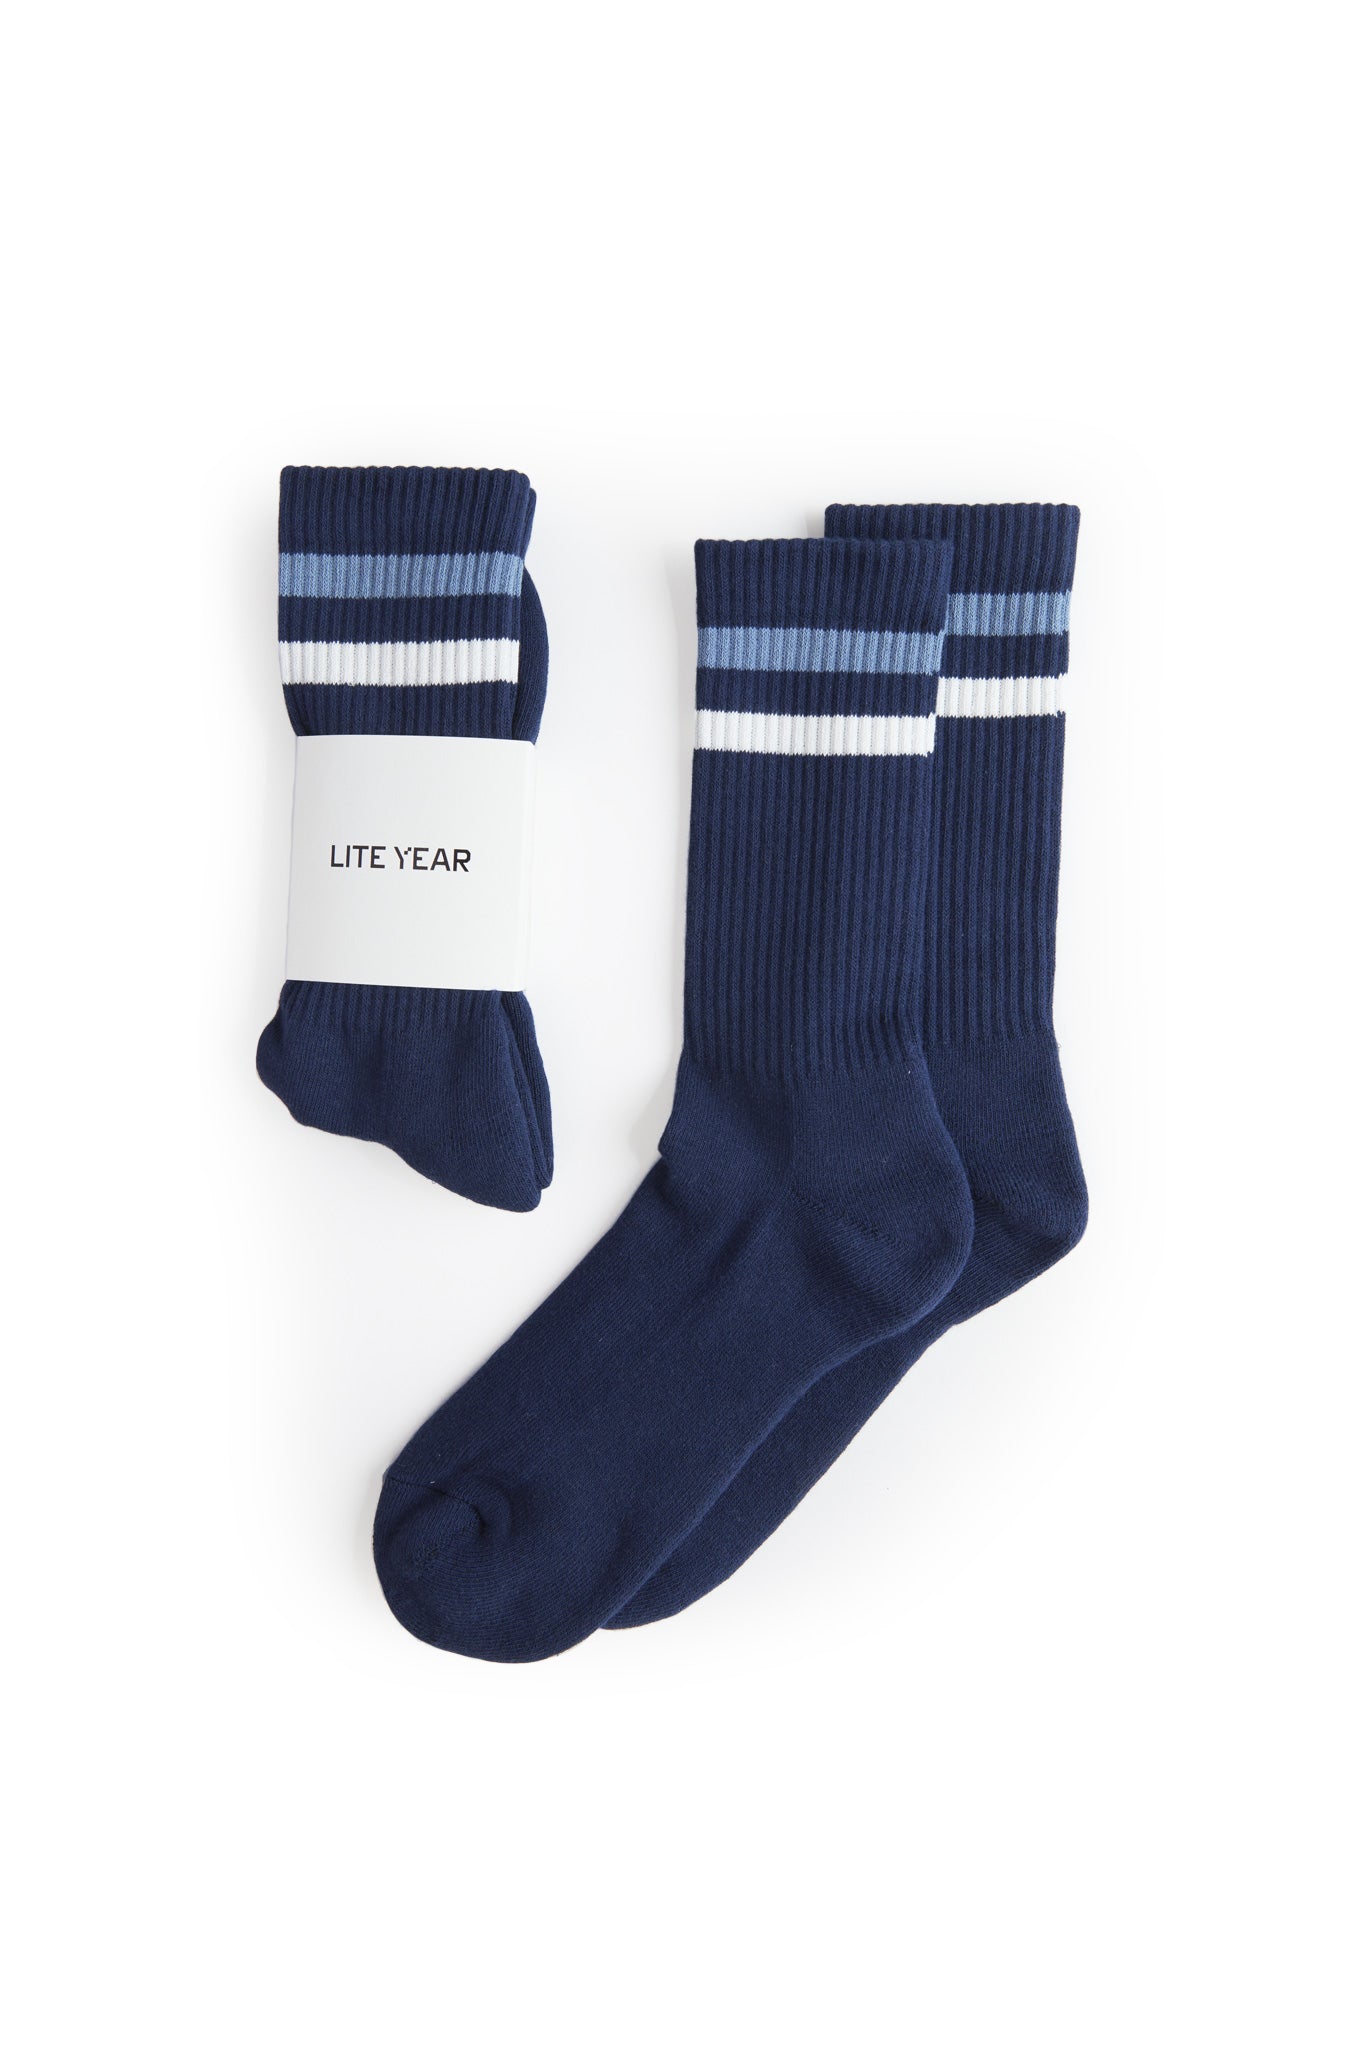 Stripe Socks - Navy/Blue/White